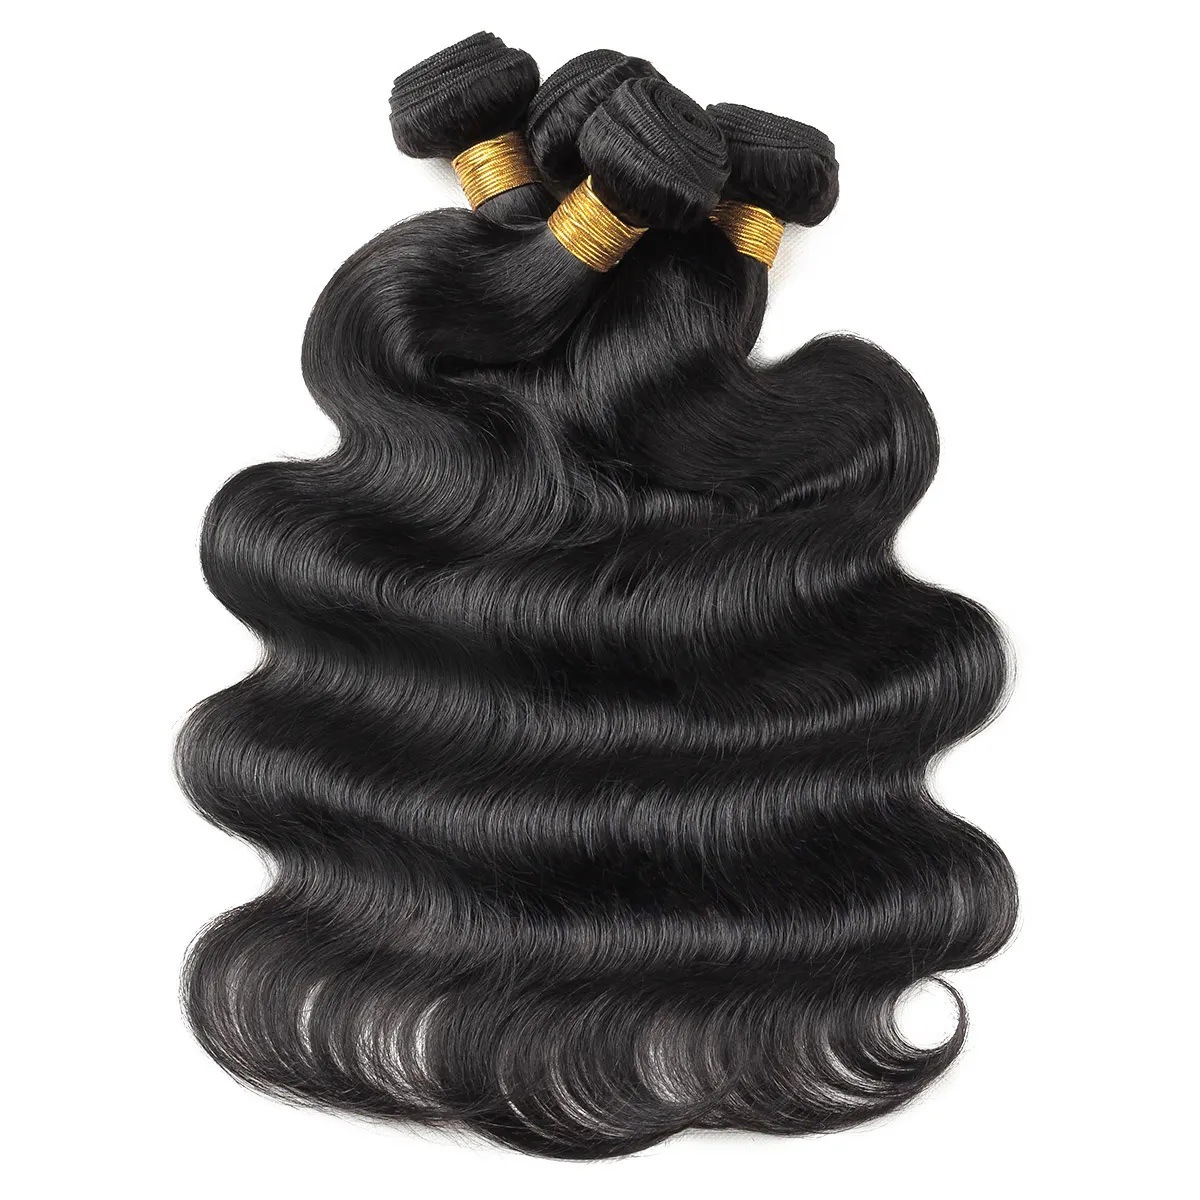 Ishow Brazilian Virgin Hair Extensions Água em linha reta 10 pcs onda do corpo peruano solto cabelo humano pacotes de cabelo macias para as mulheres Malásia todas as idades 8-28inch preto natural